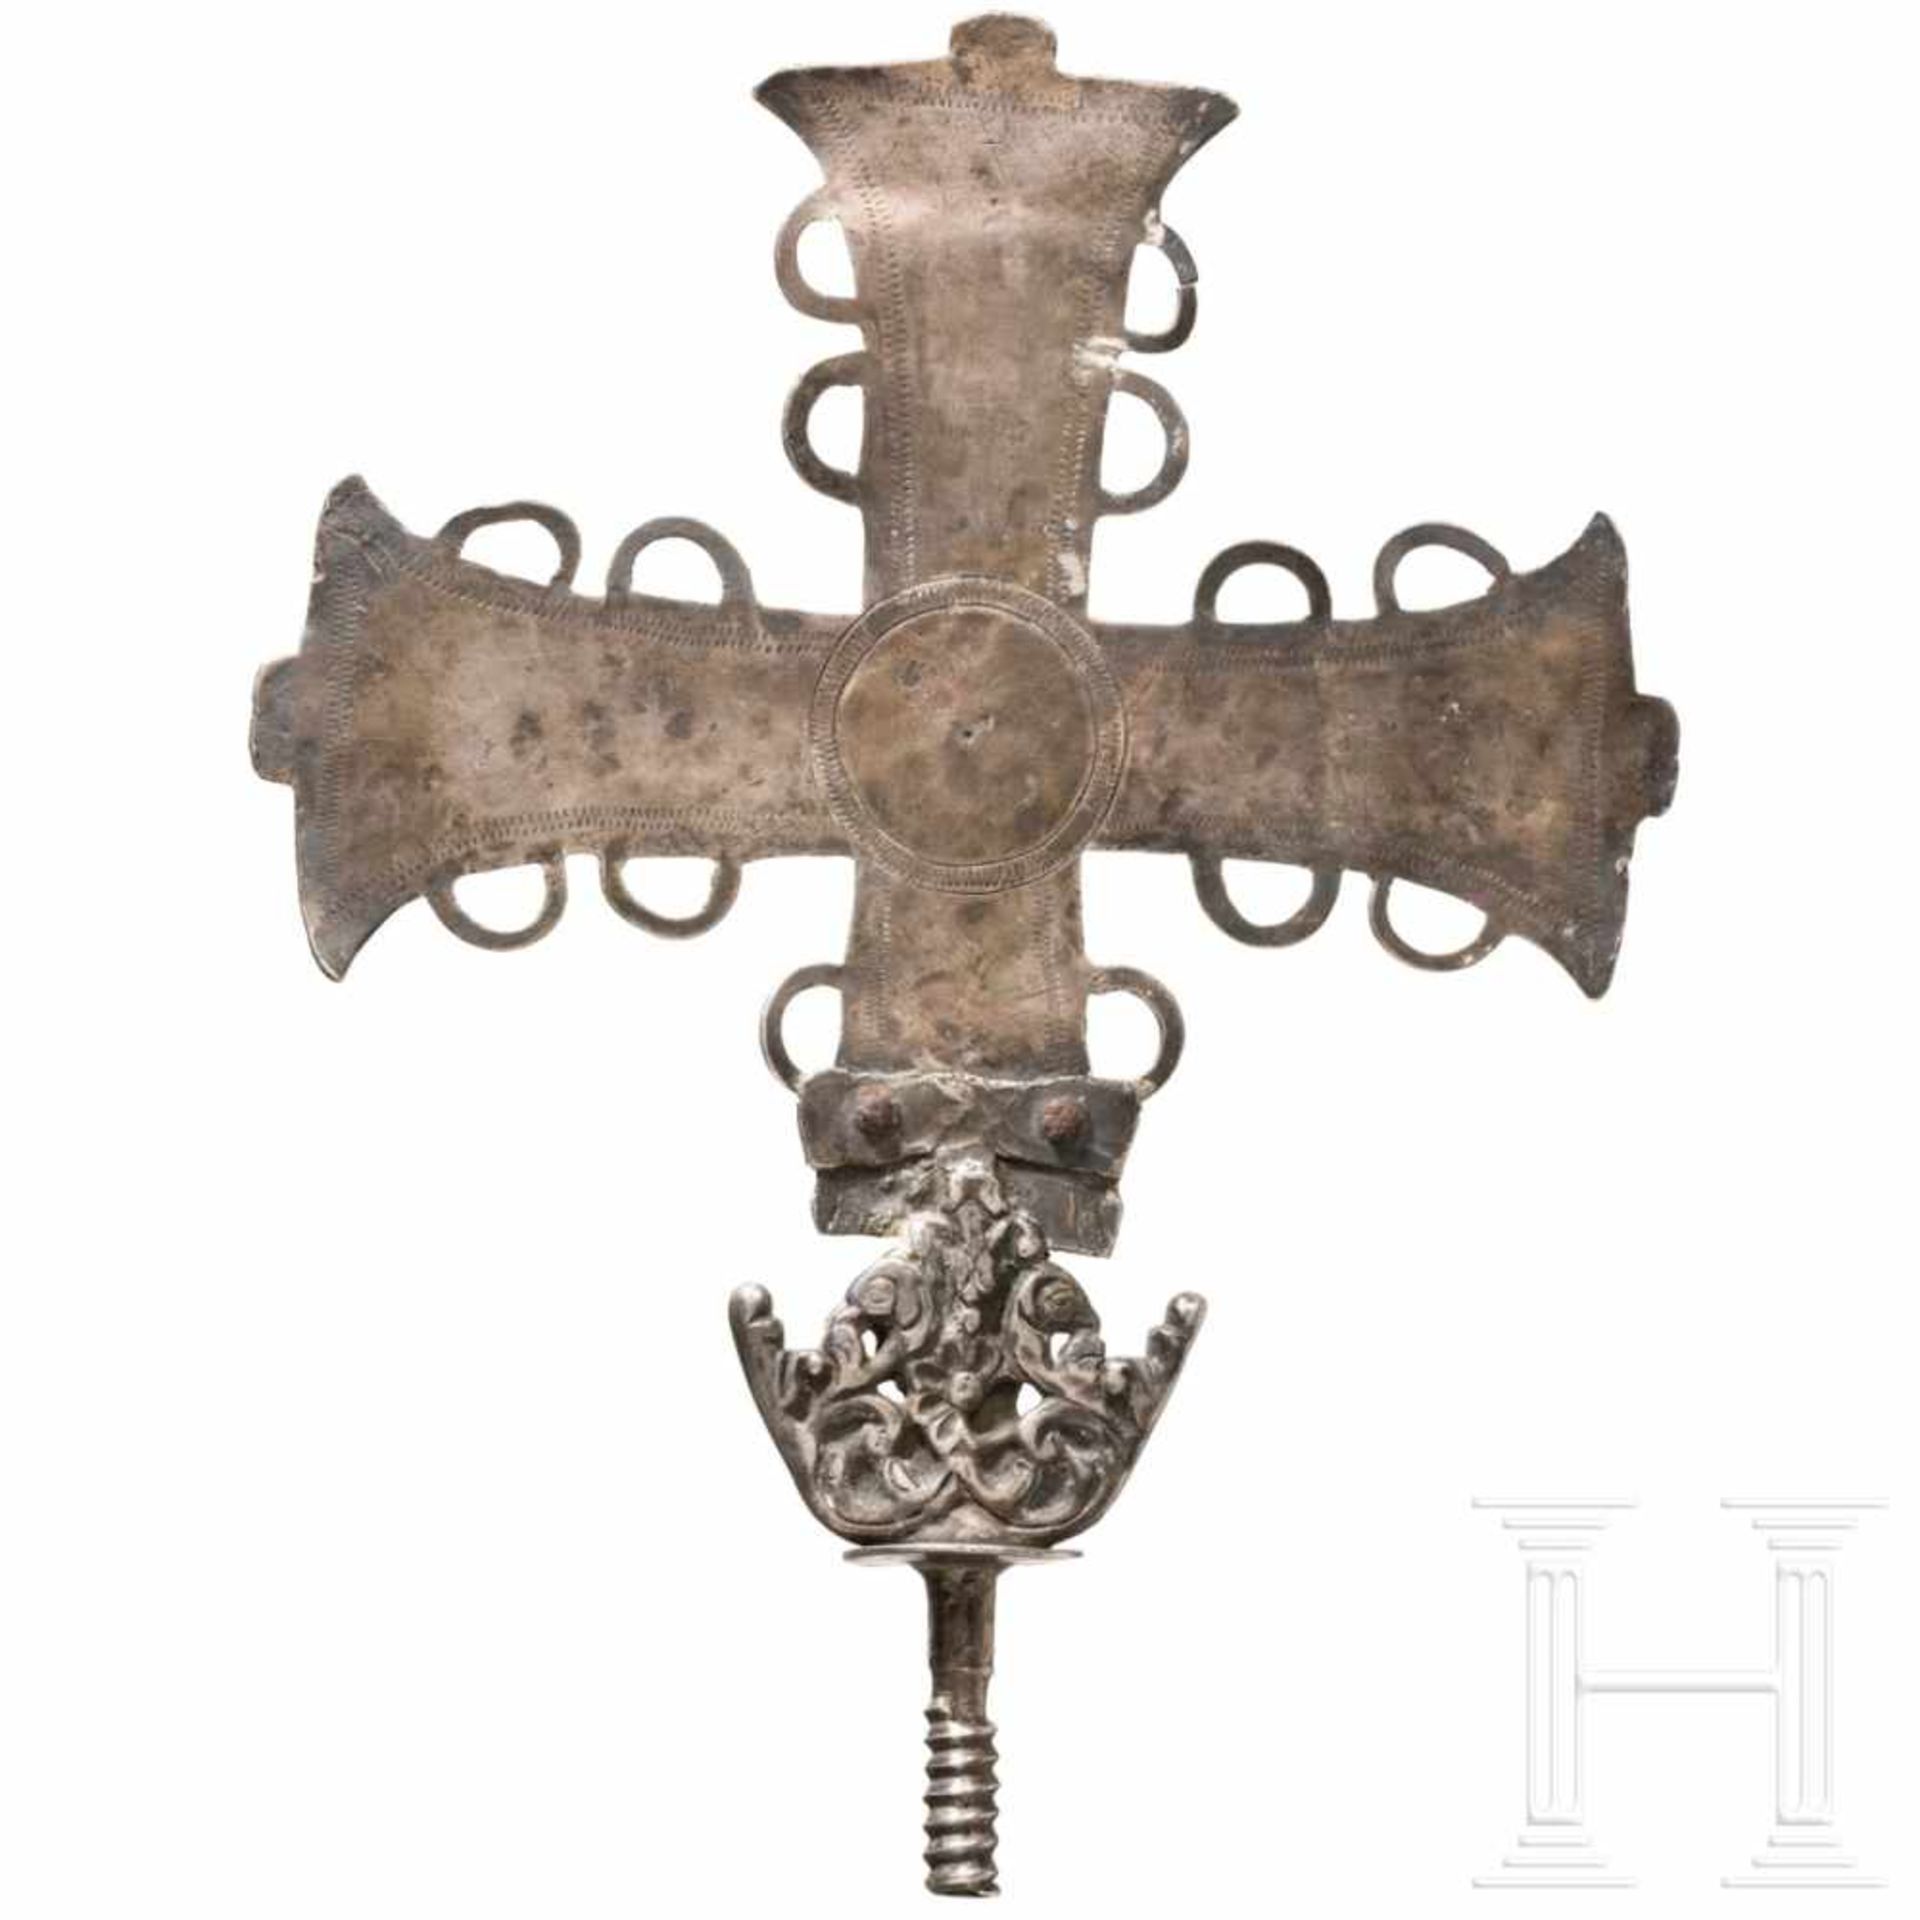 An Iberian silver bearing cross, 16th/17th centuryEventuell früheres Kreuz mit geflecheltem Dekor - Bild 2 aus 2